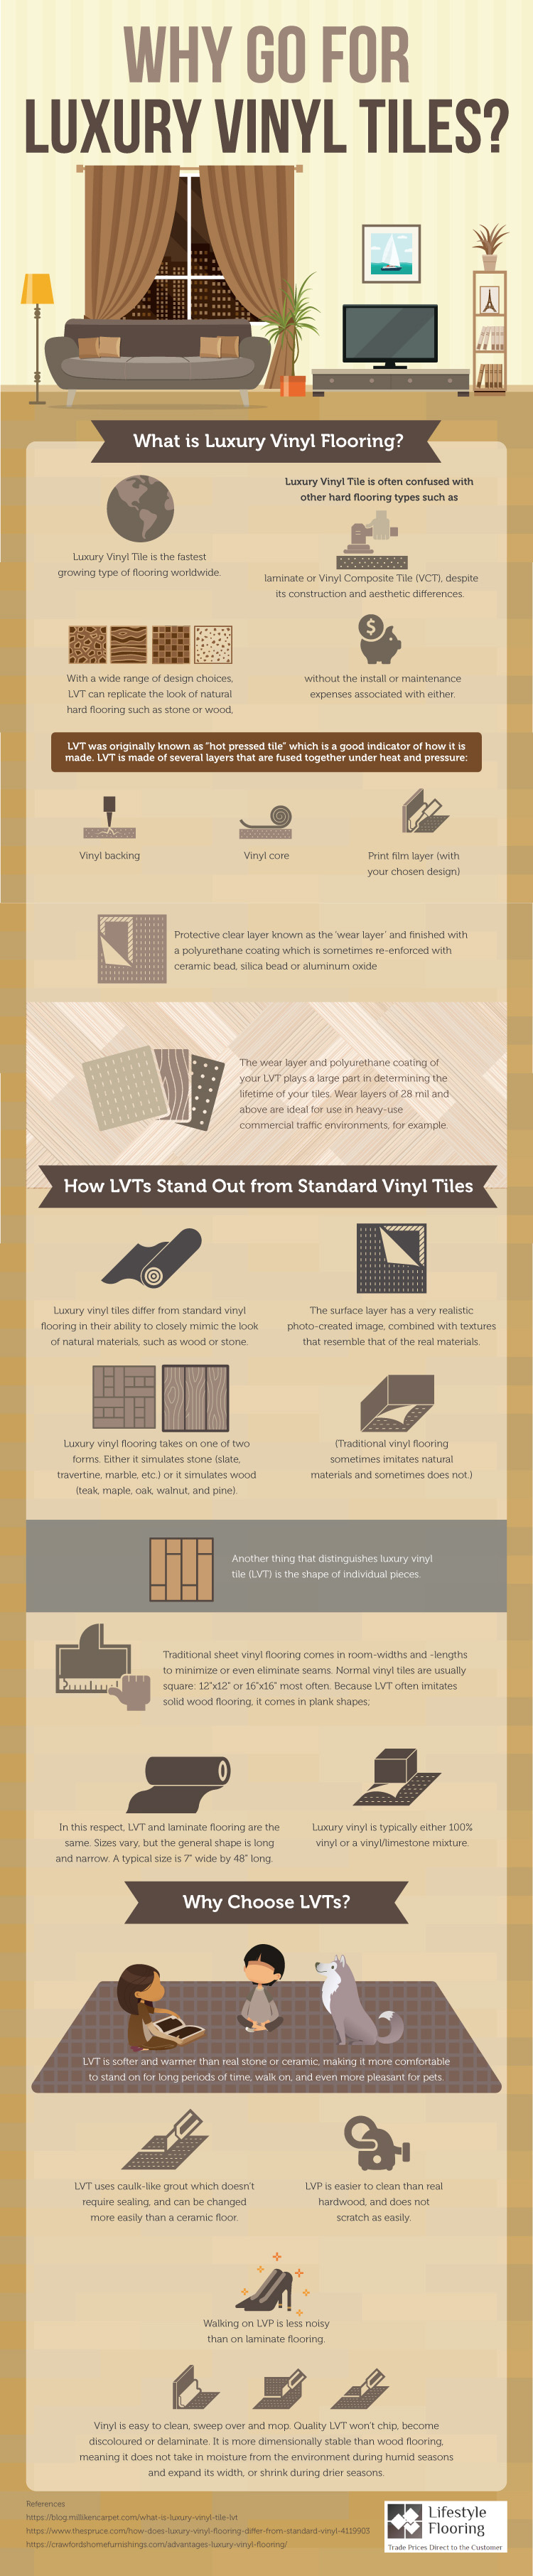 Why Go For Luxury Vinyl Tiles